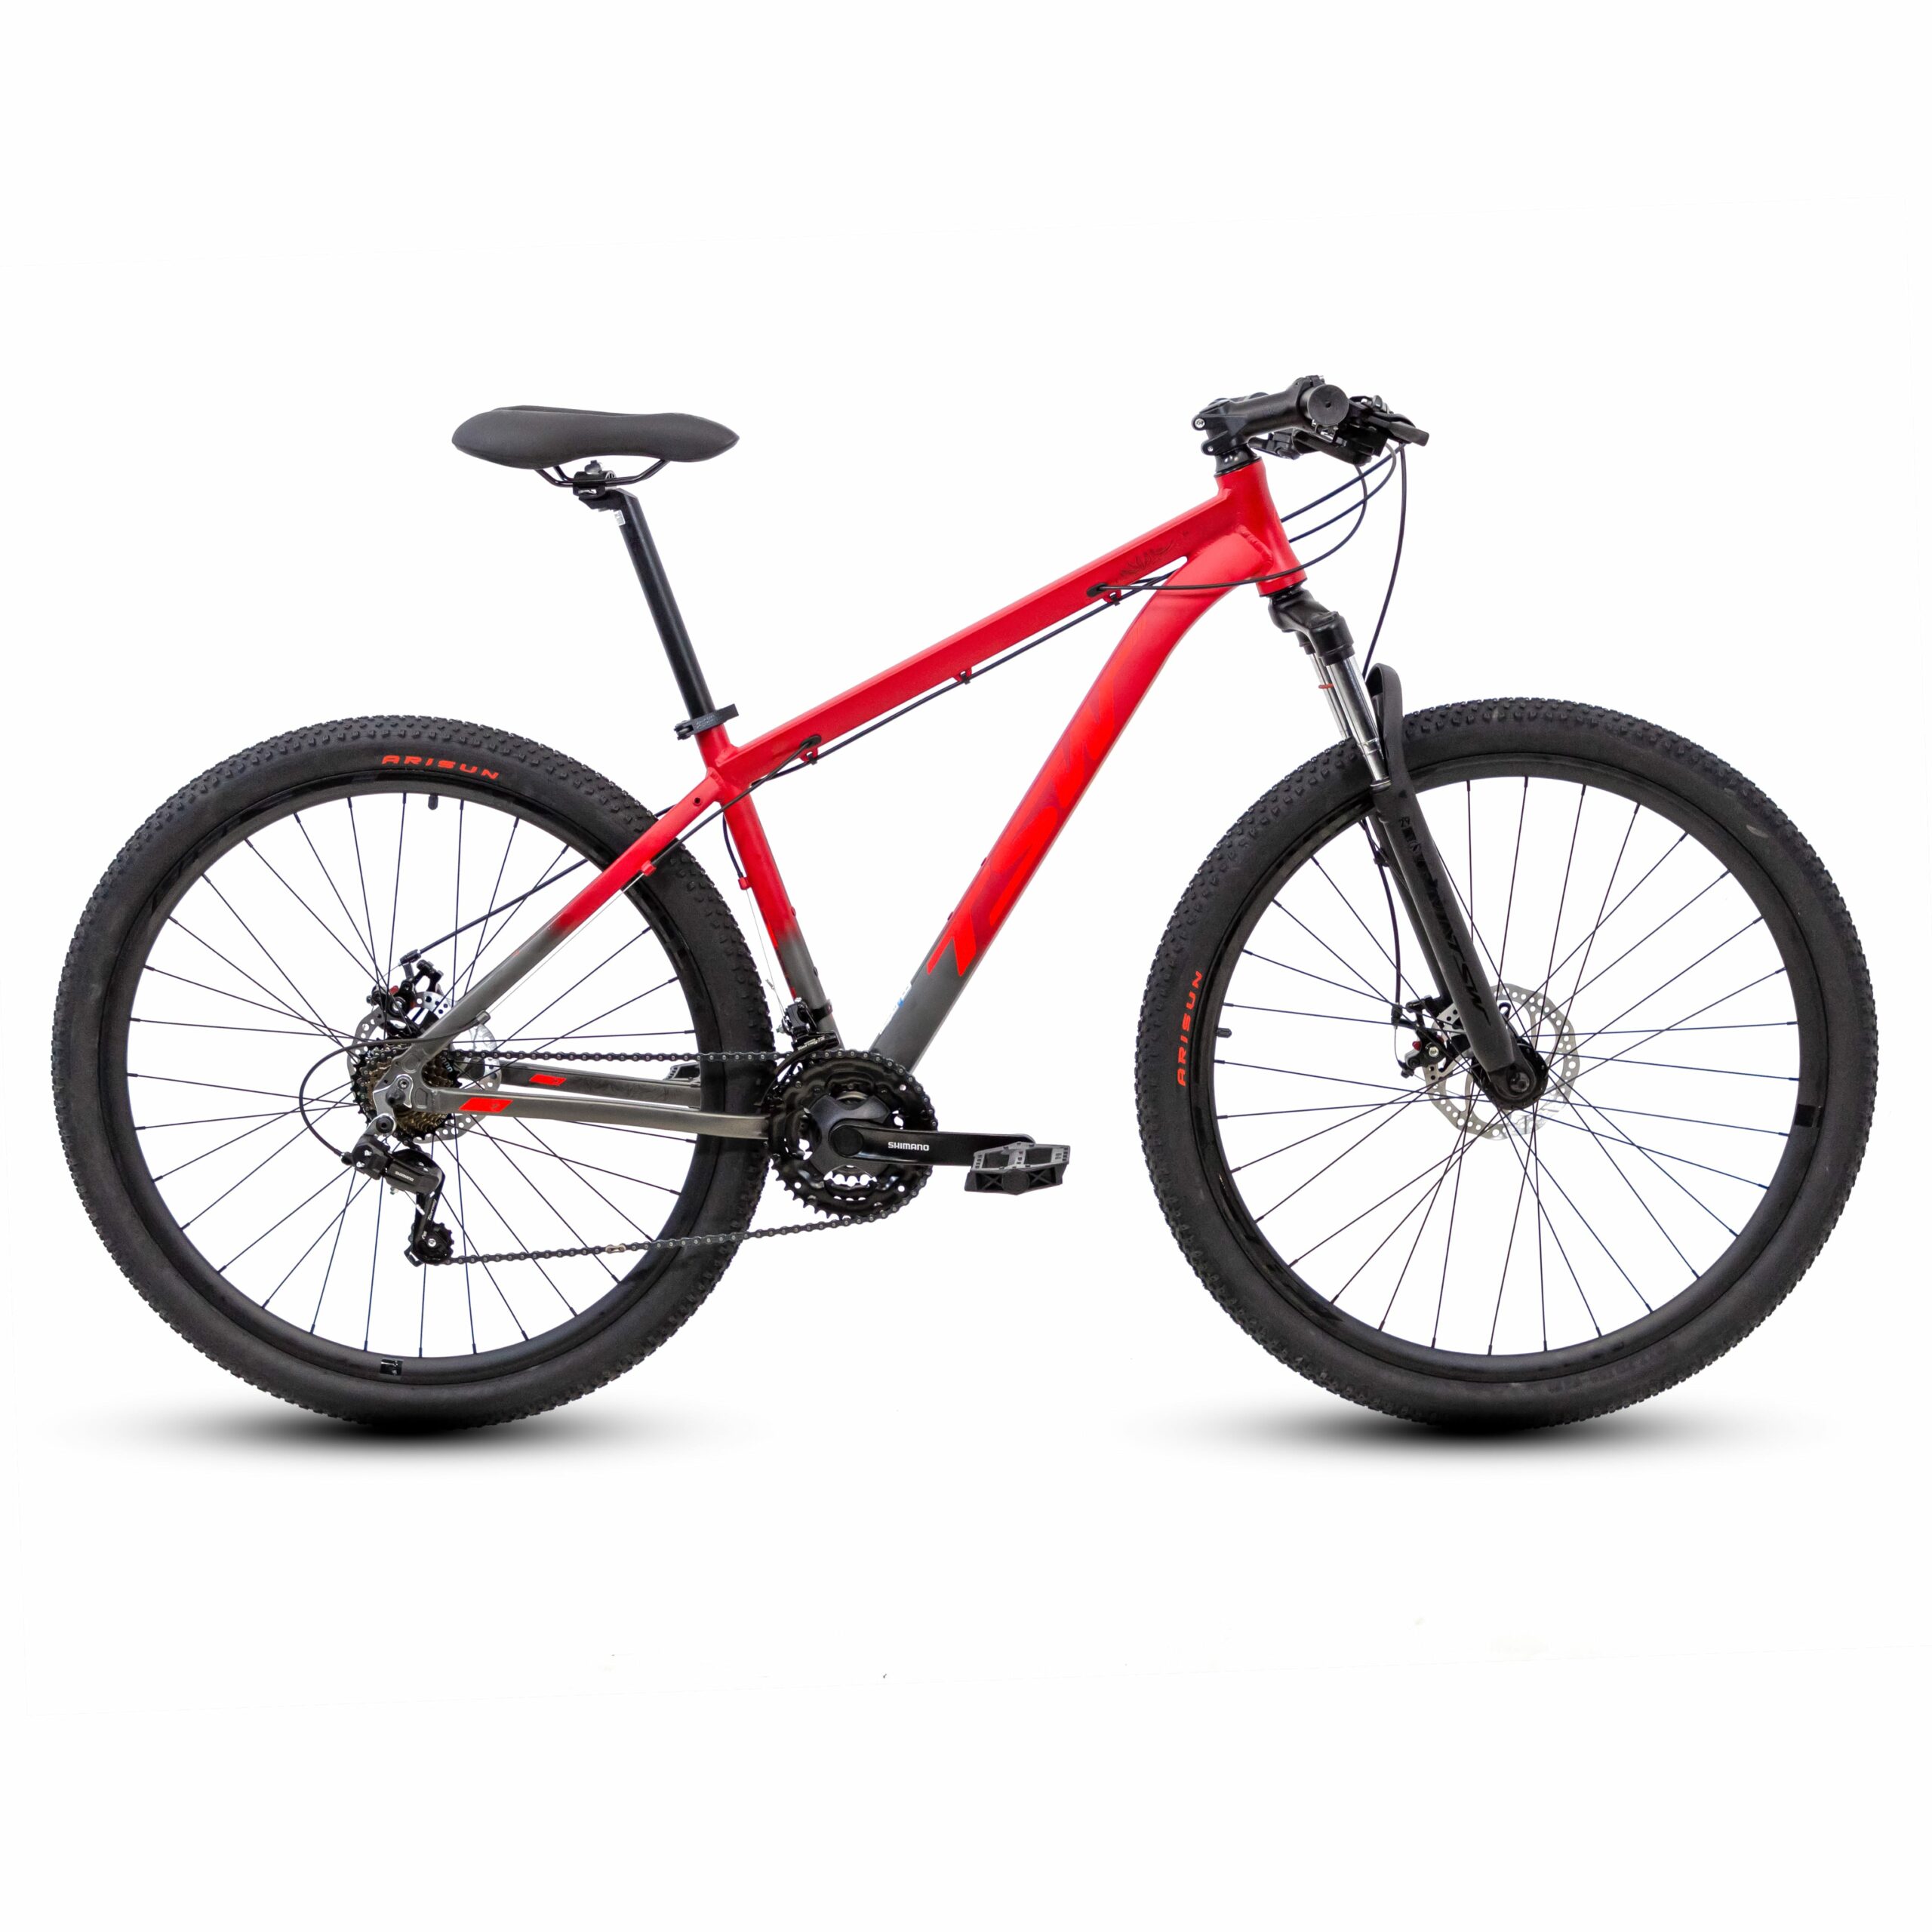 Bicicleta TSW Ride | 2021/2022 - 15.5", Cinza/Vermelho